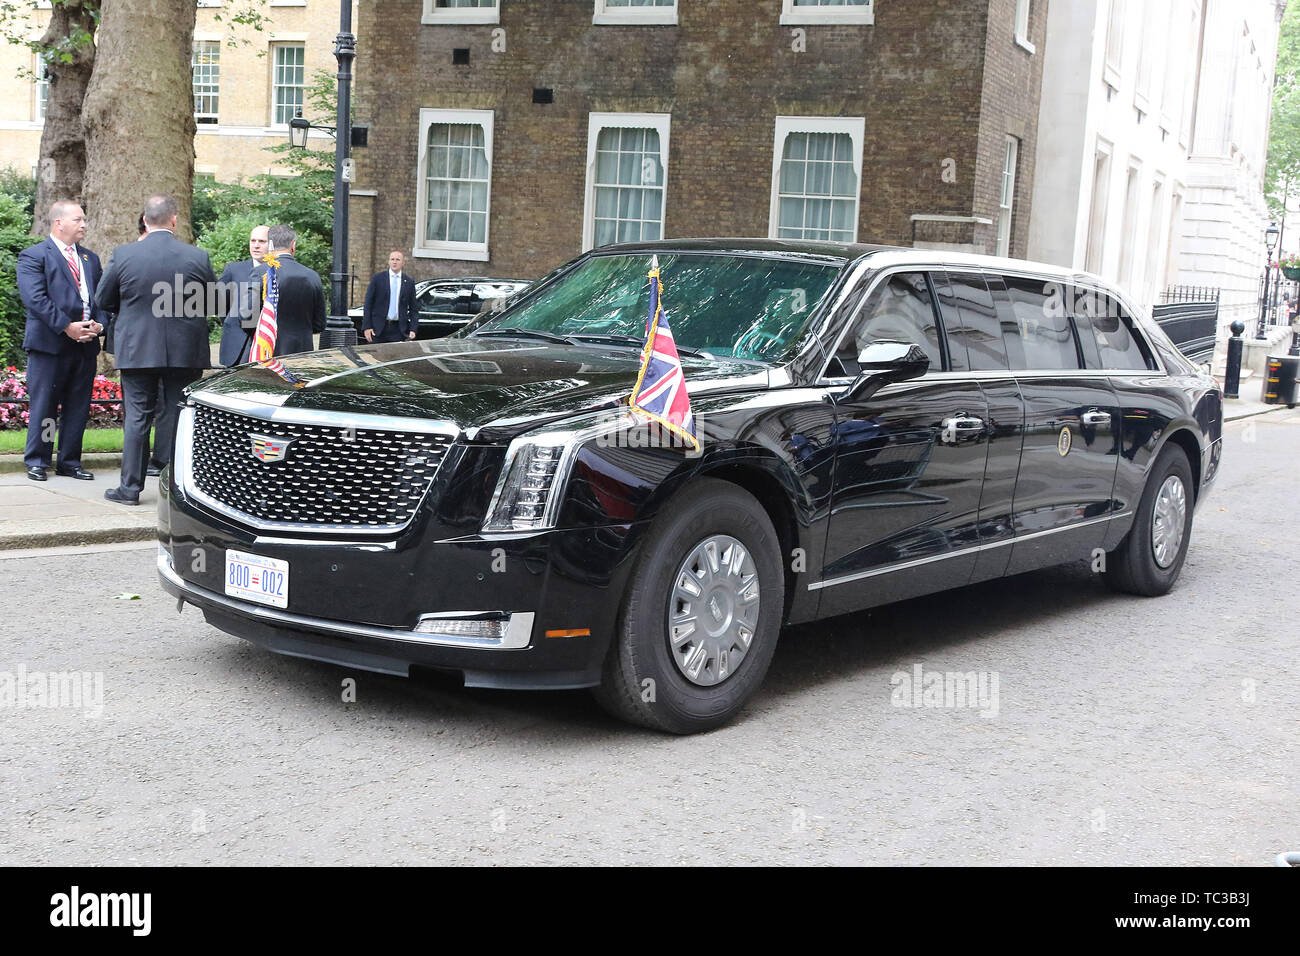 La Bestia, Stati Uniti d'America visita presidenziale per il Regno Unito, Downing Street, Londra, Regno Unito, 04 giugno 2019, Foto di Richard Goldschmidt Foto Stock